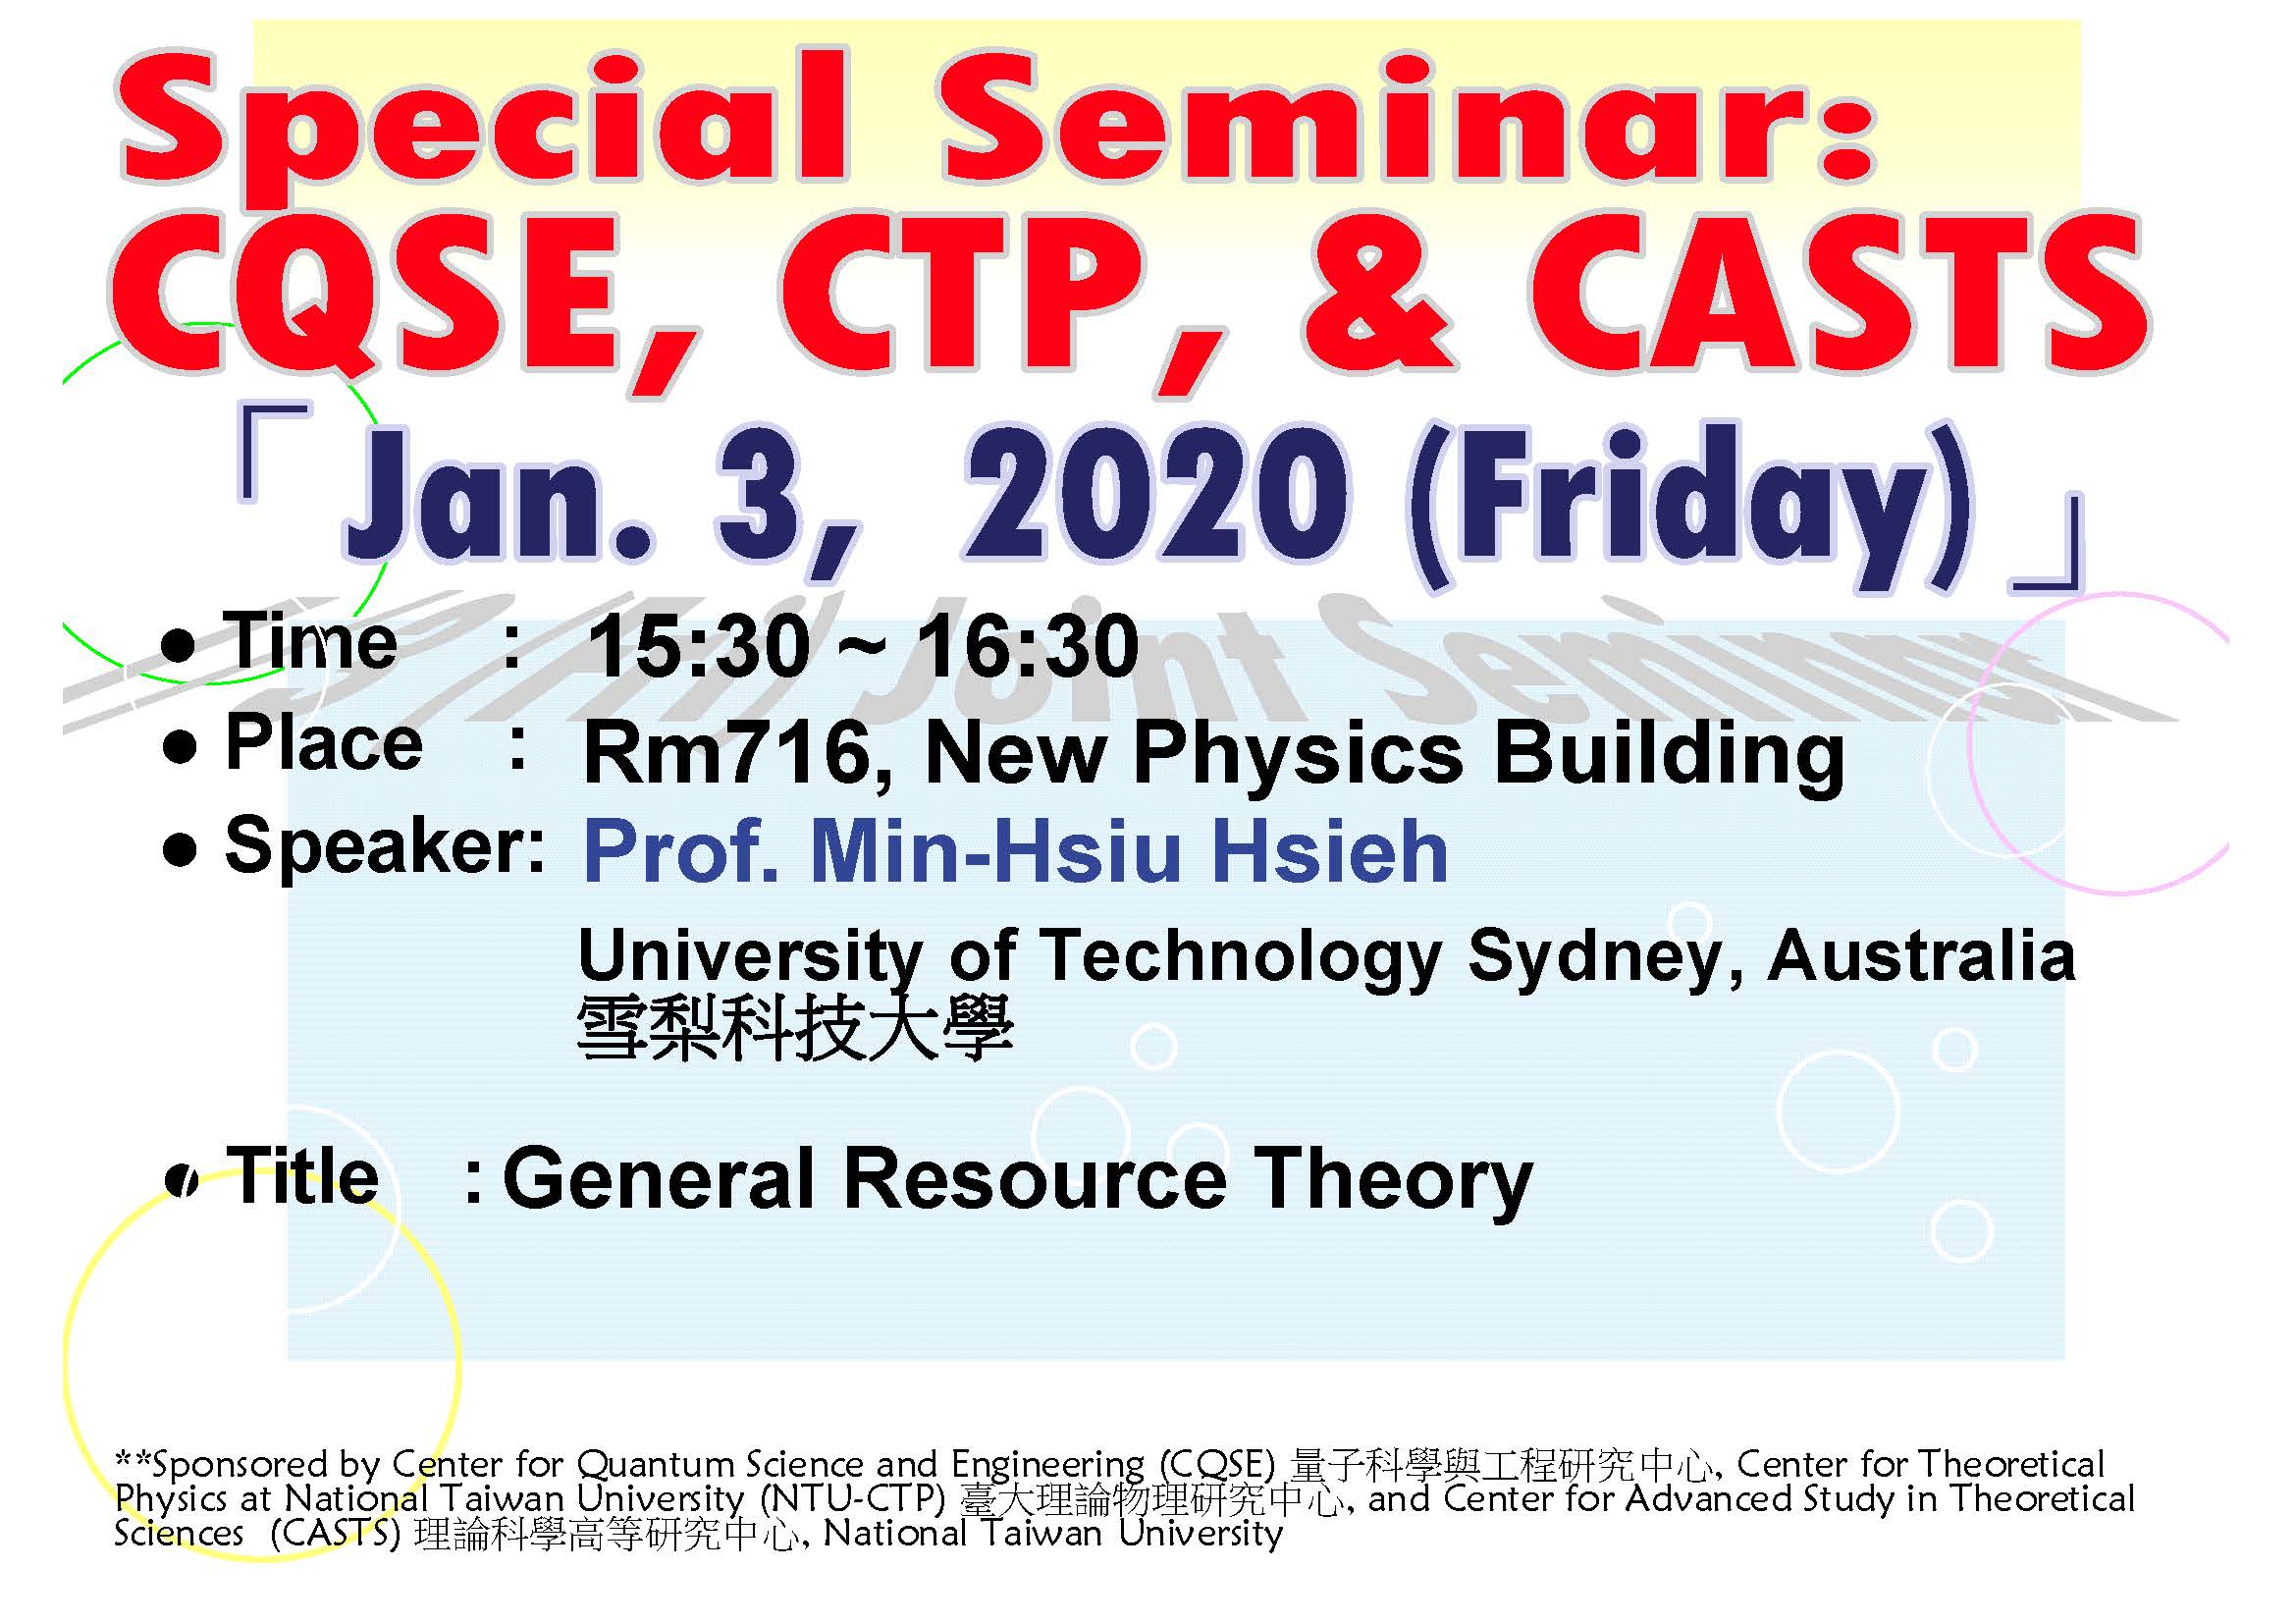 Special Seminar - CQSE, CTP, & CASTS Joint Seminar